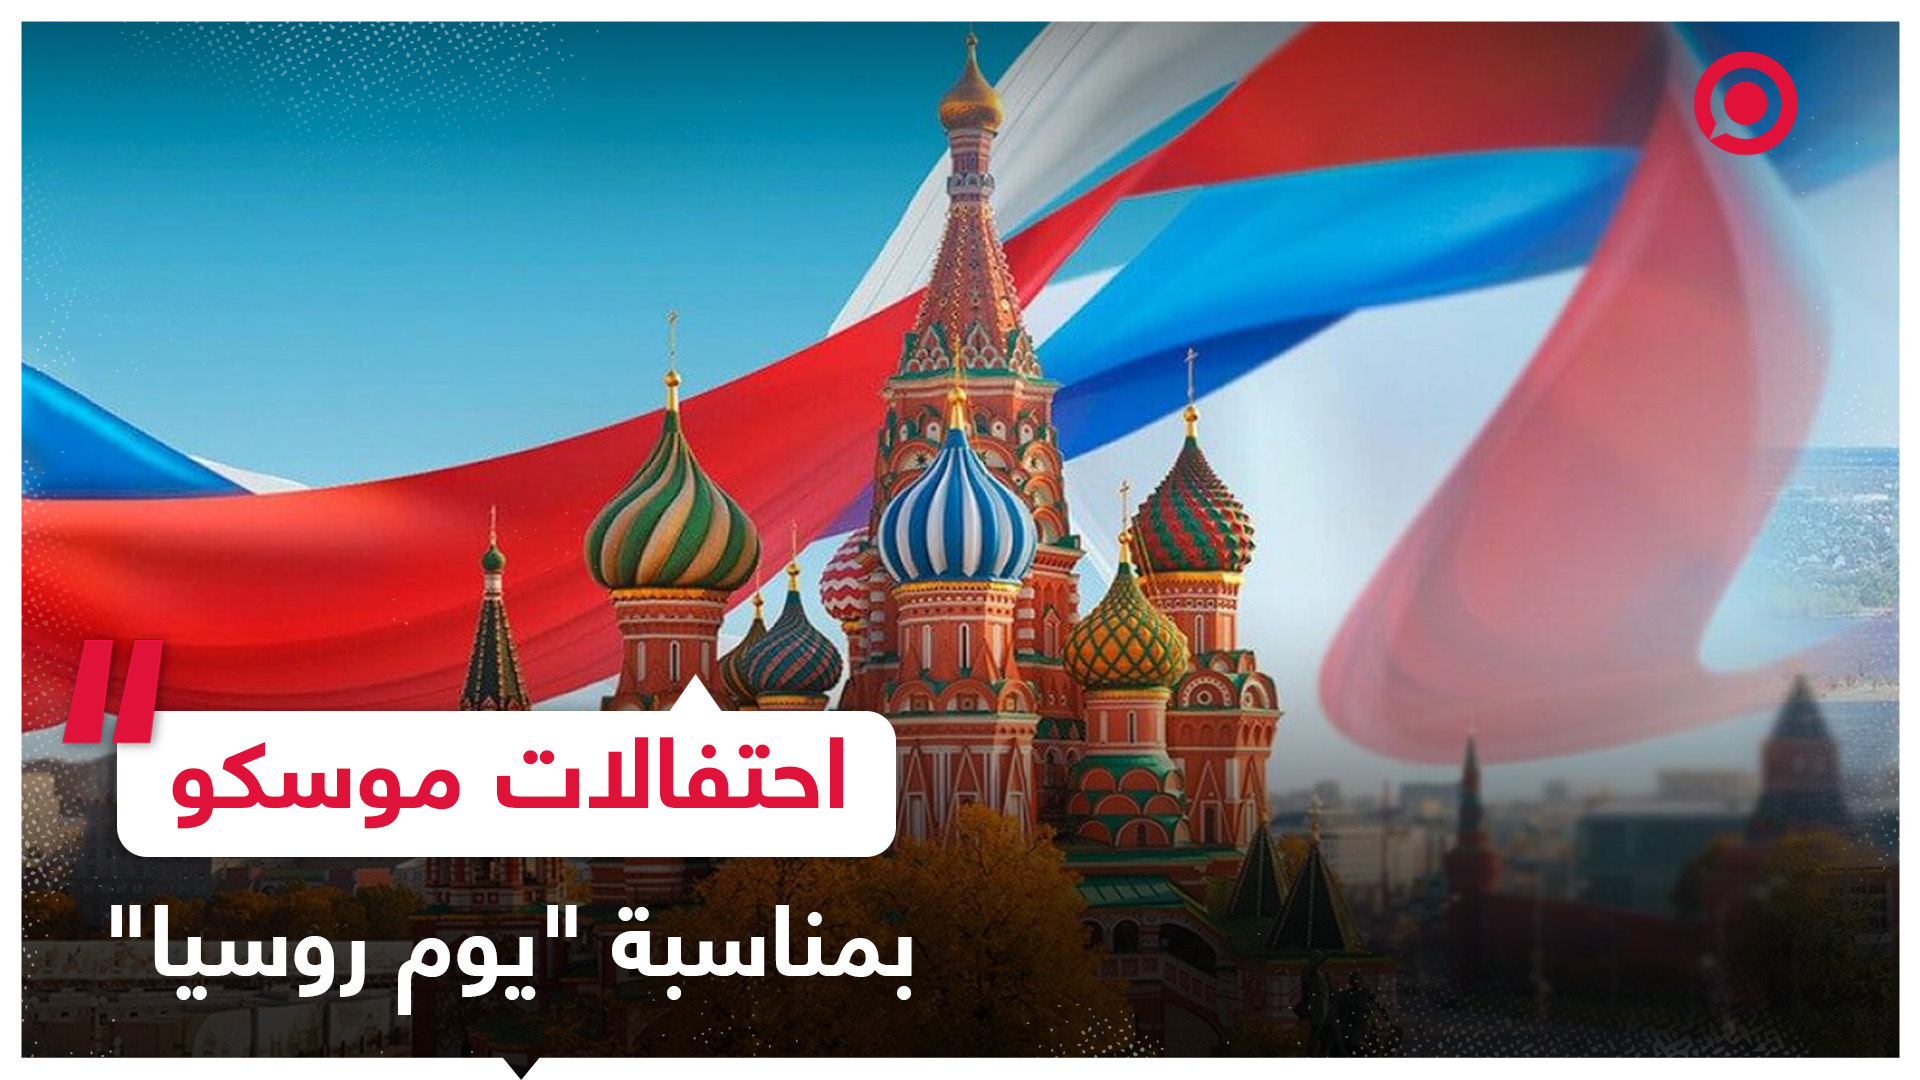 بالأعلام والحفلات الموسيقية.. العاصمة موسكو تحتفي بـ" بيوم روسيا"